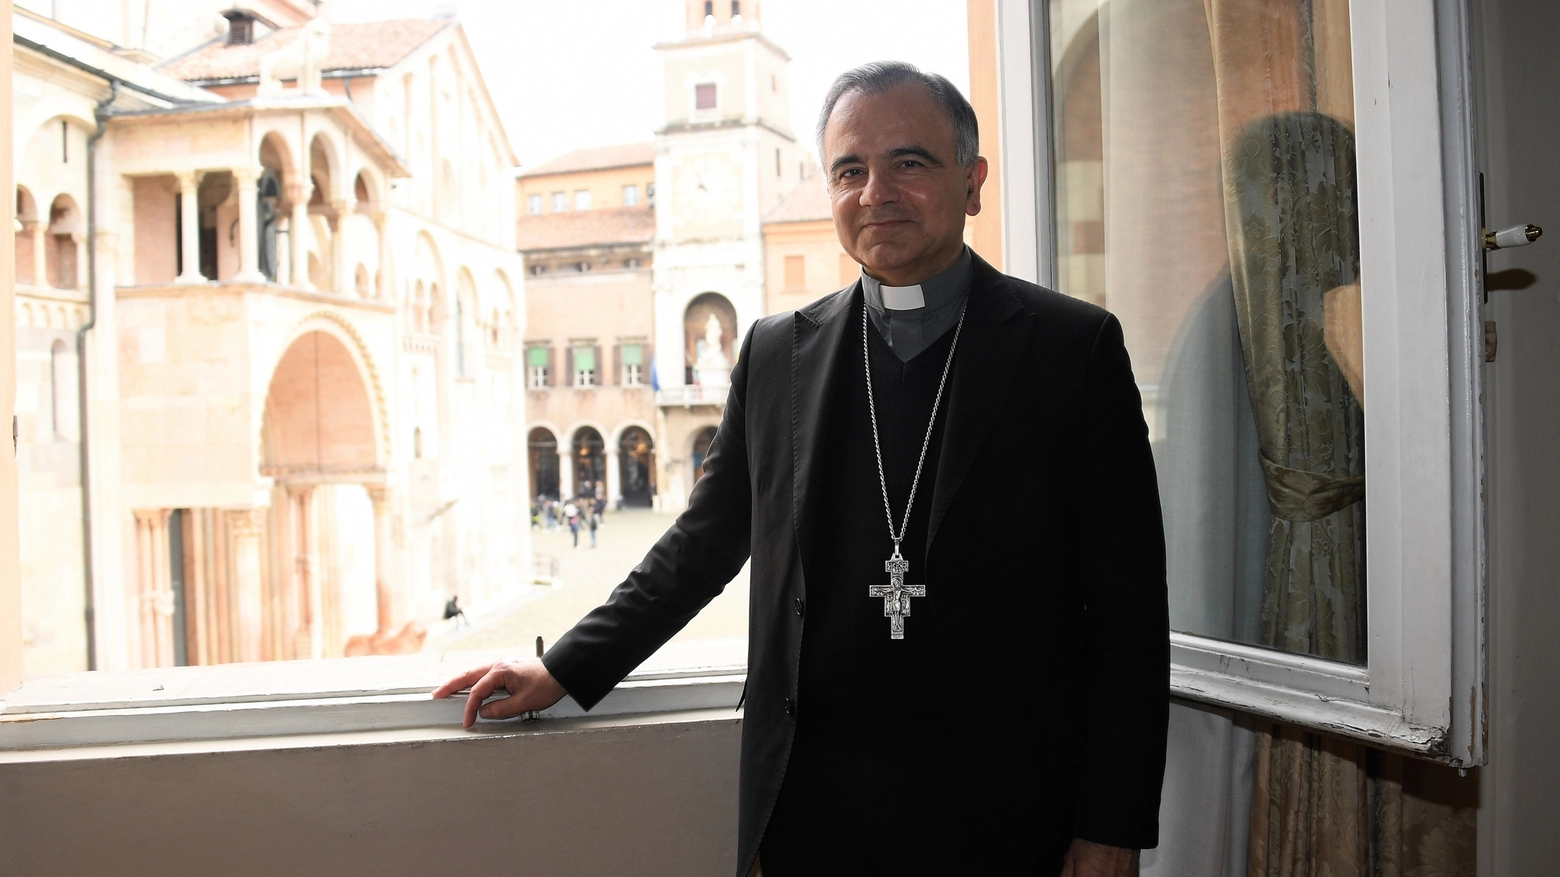 Il vescovo è pronto a considerare l'idea della beatificazione (Foto Fiocchi)